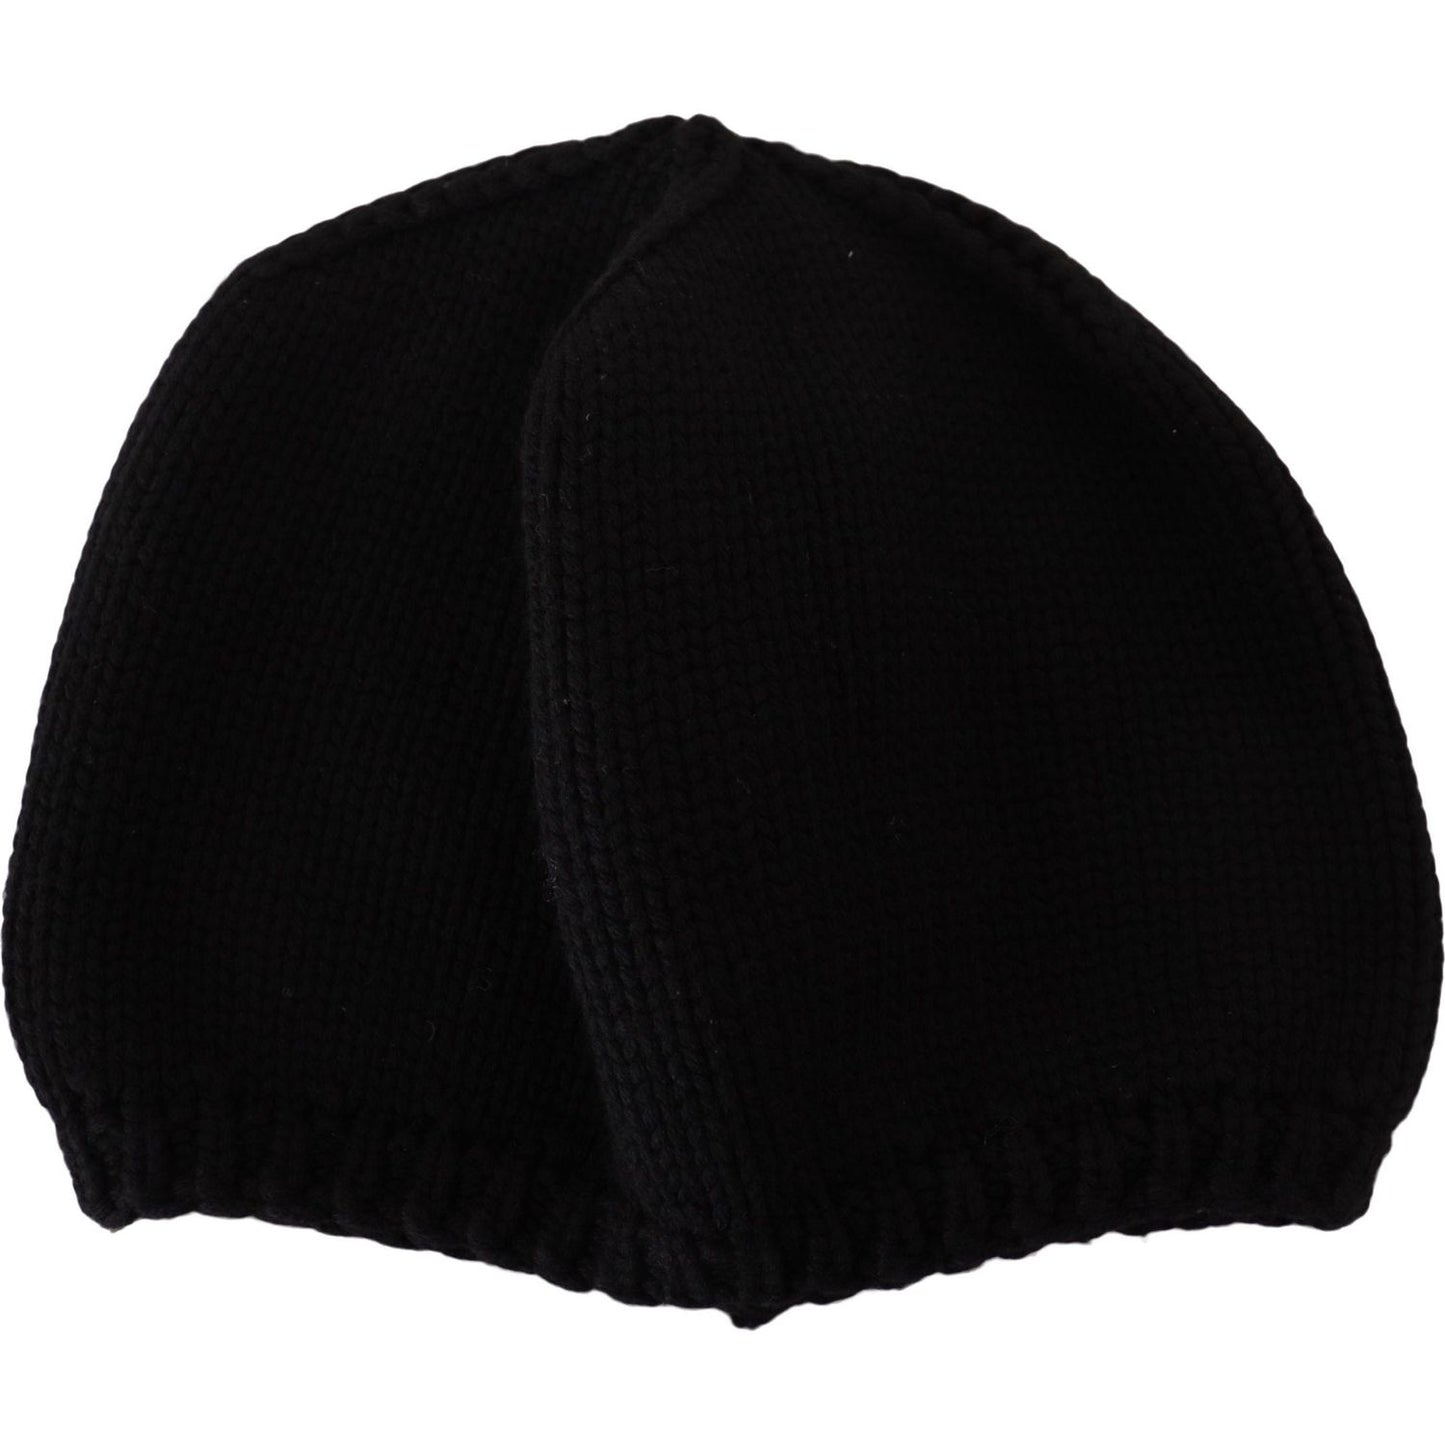 Dolce & Gabbana Elegant Virgin Wool Slouch Hat black-virgin-wool-knitted-women-winter-beanie-hat